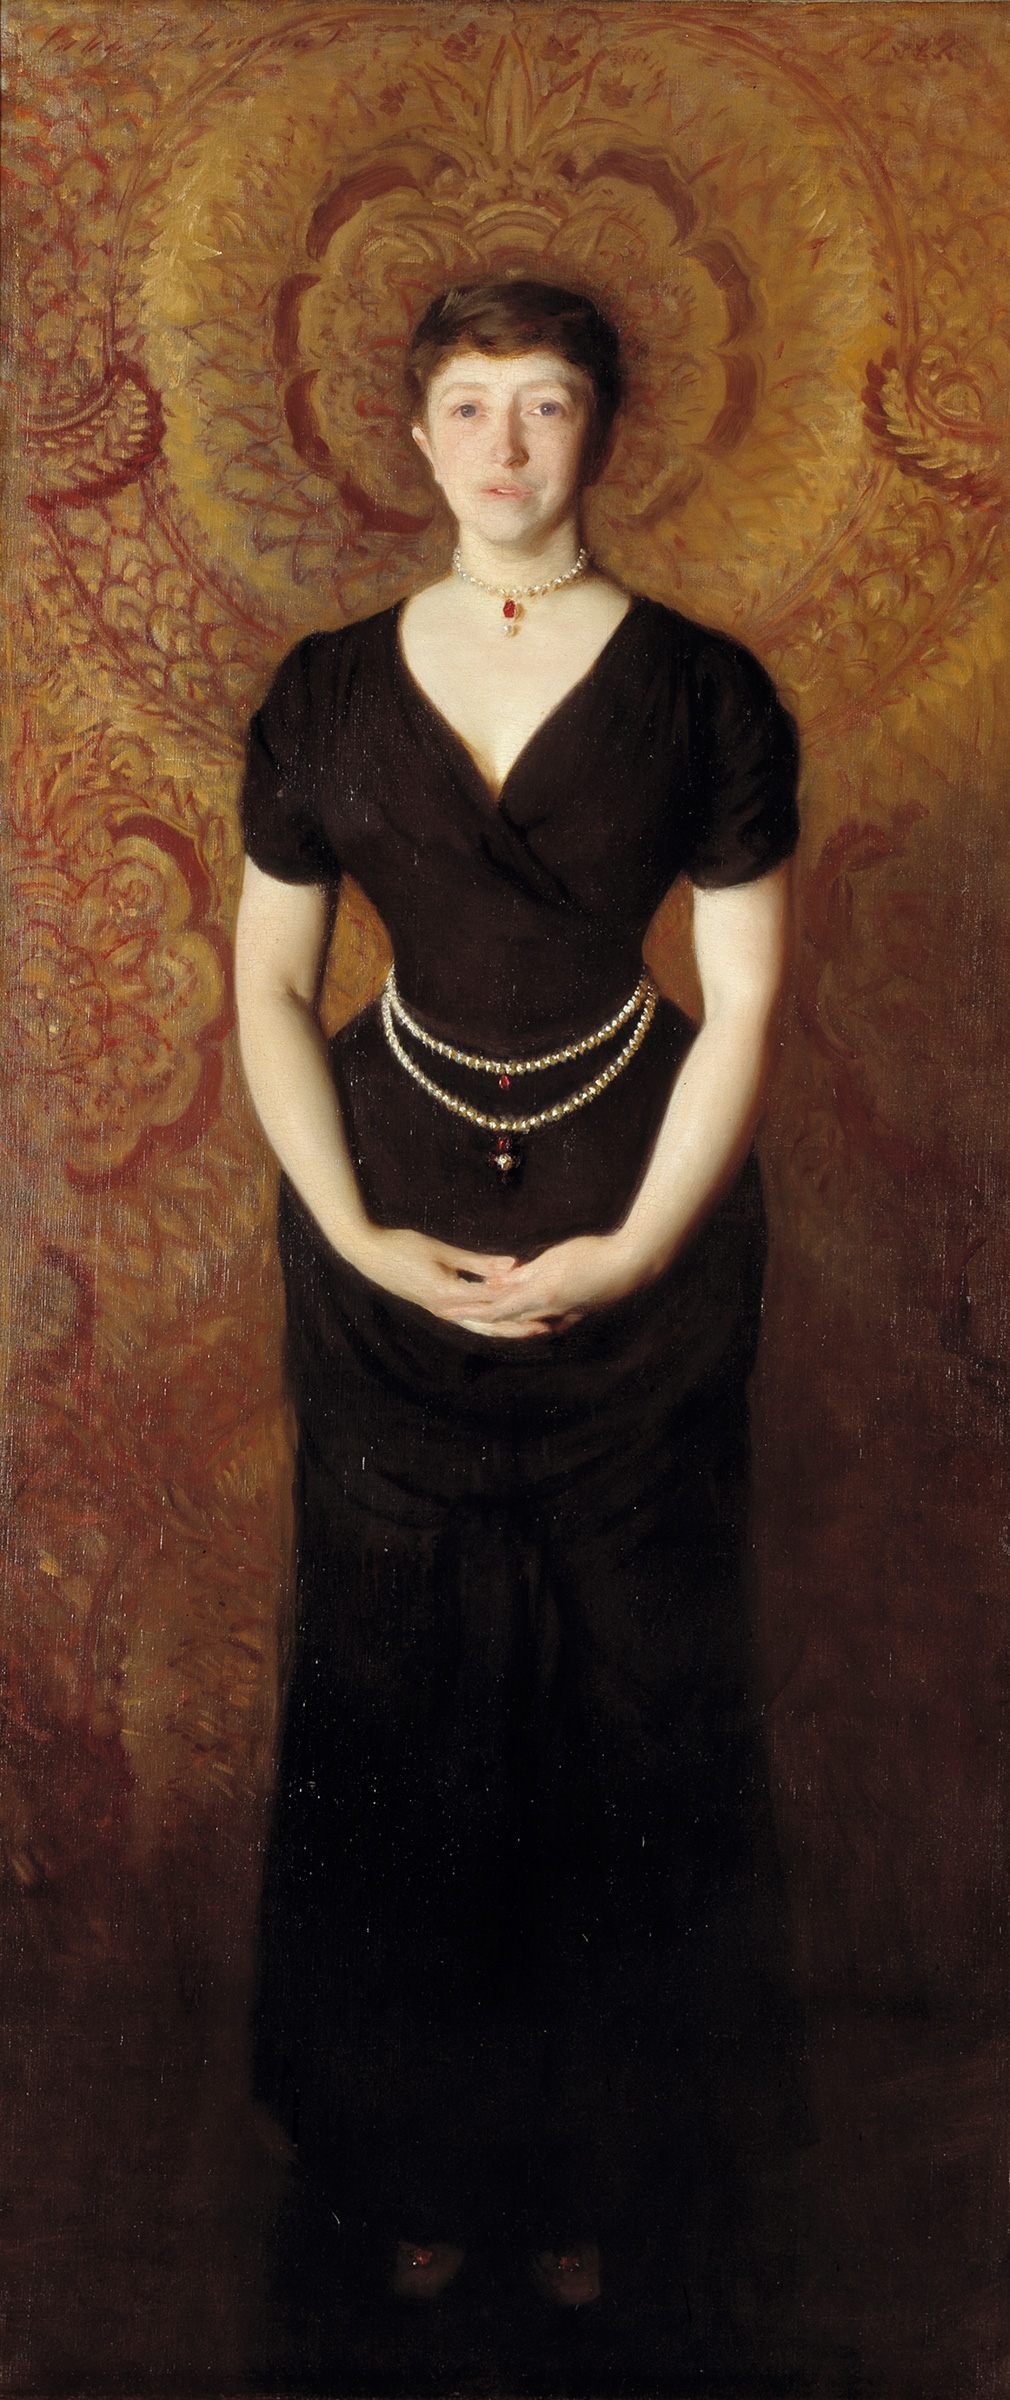 Isabella Stewart Gardner’ın Portresi by John Singer Sargent - 1888 